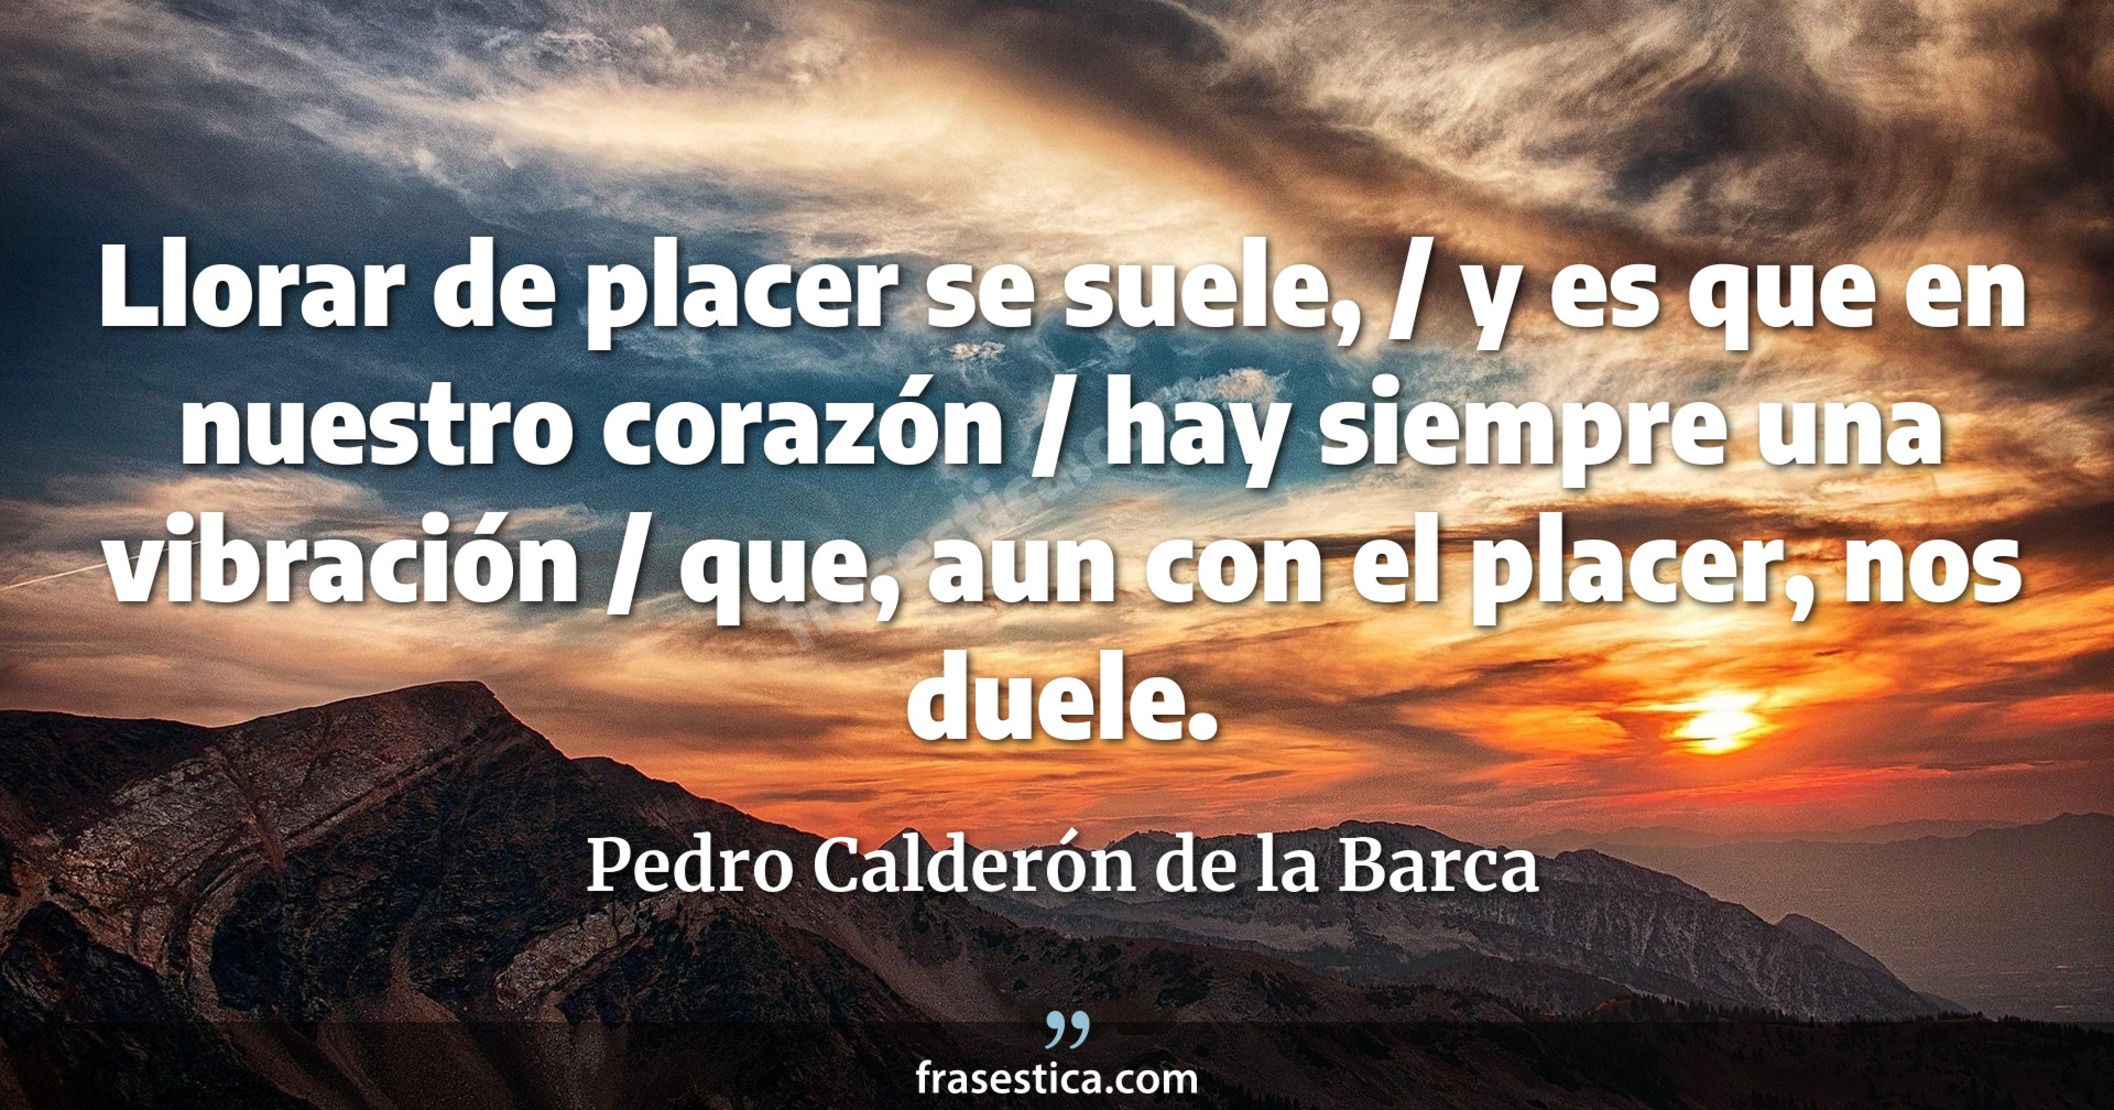 Llorar de placer se suele, / y es que en nuestro corazón / hay siempre una vibración / que, aun con el placer, nos duele. - Pedro Calderón de la Barca